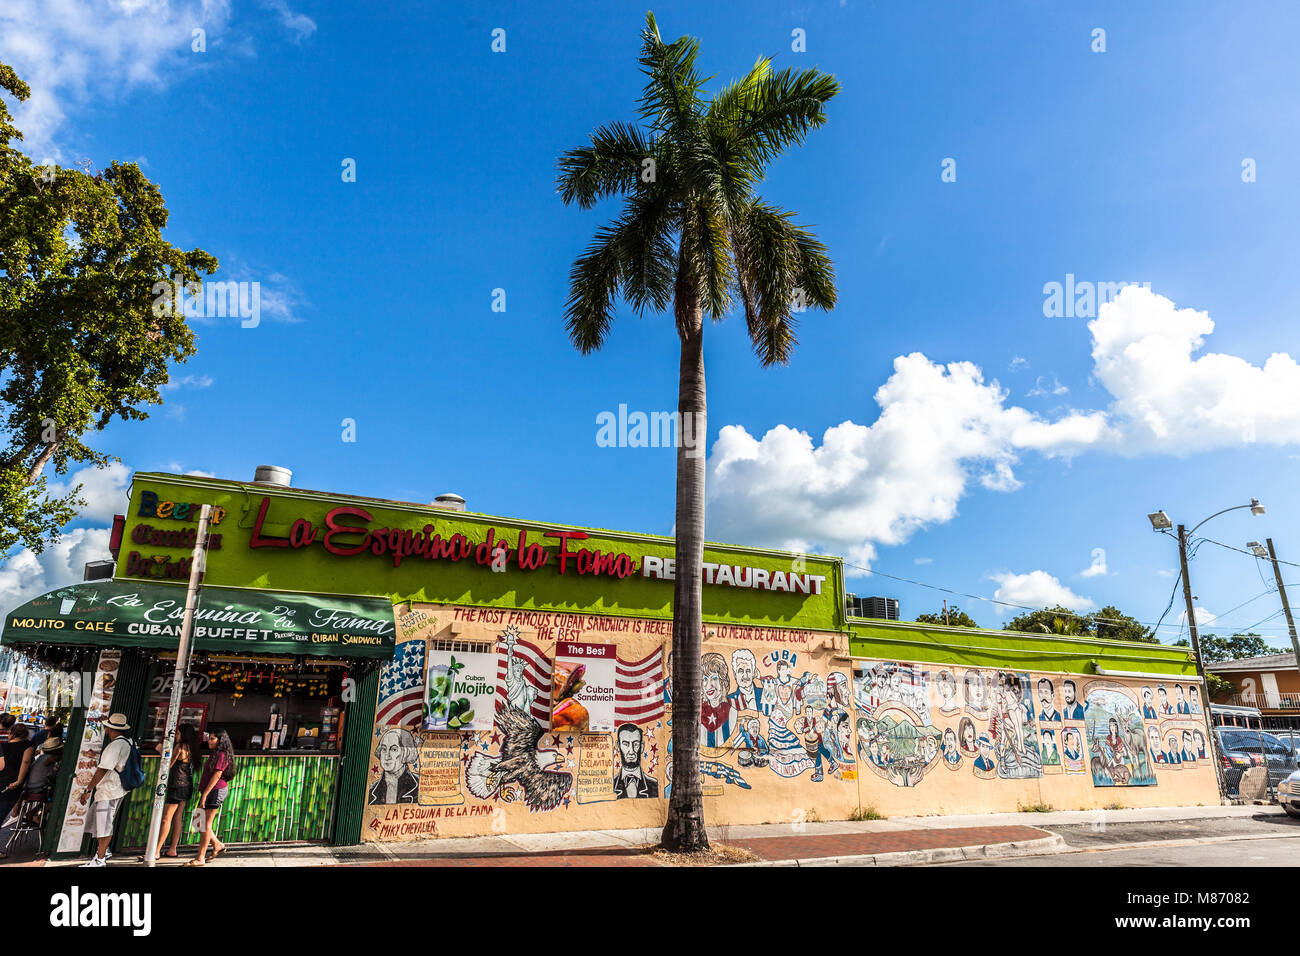 La Esquina de la fama ristorante, Little Havana Miami, Florida, Stati Uniti d'America. Foto Stock